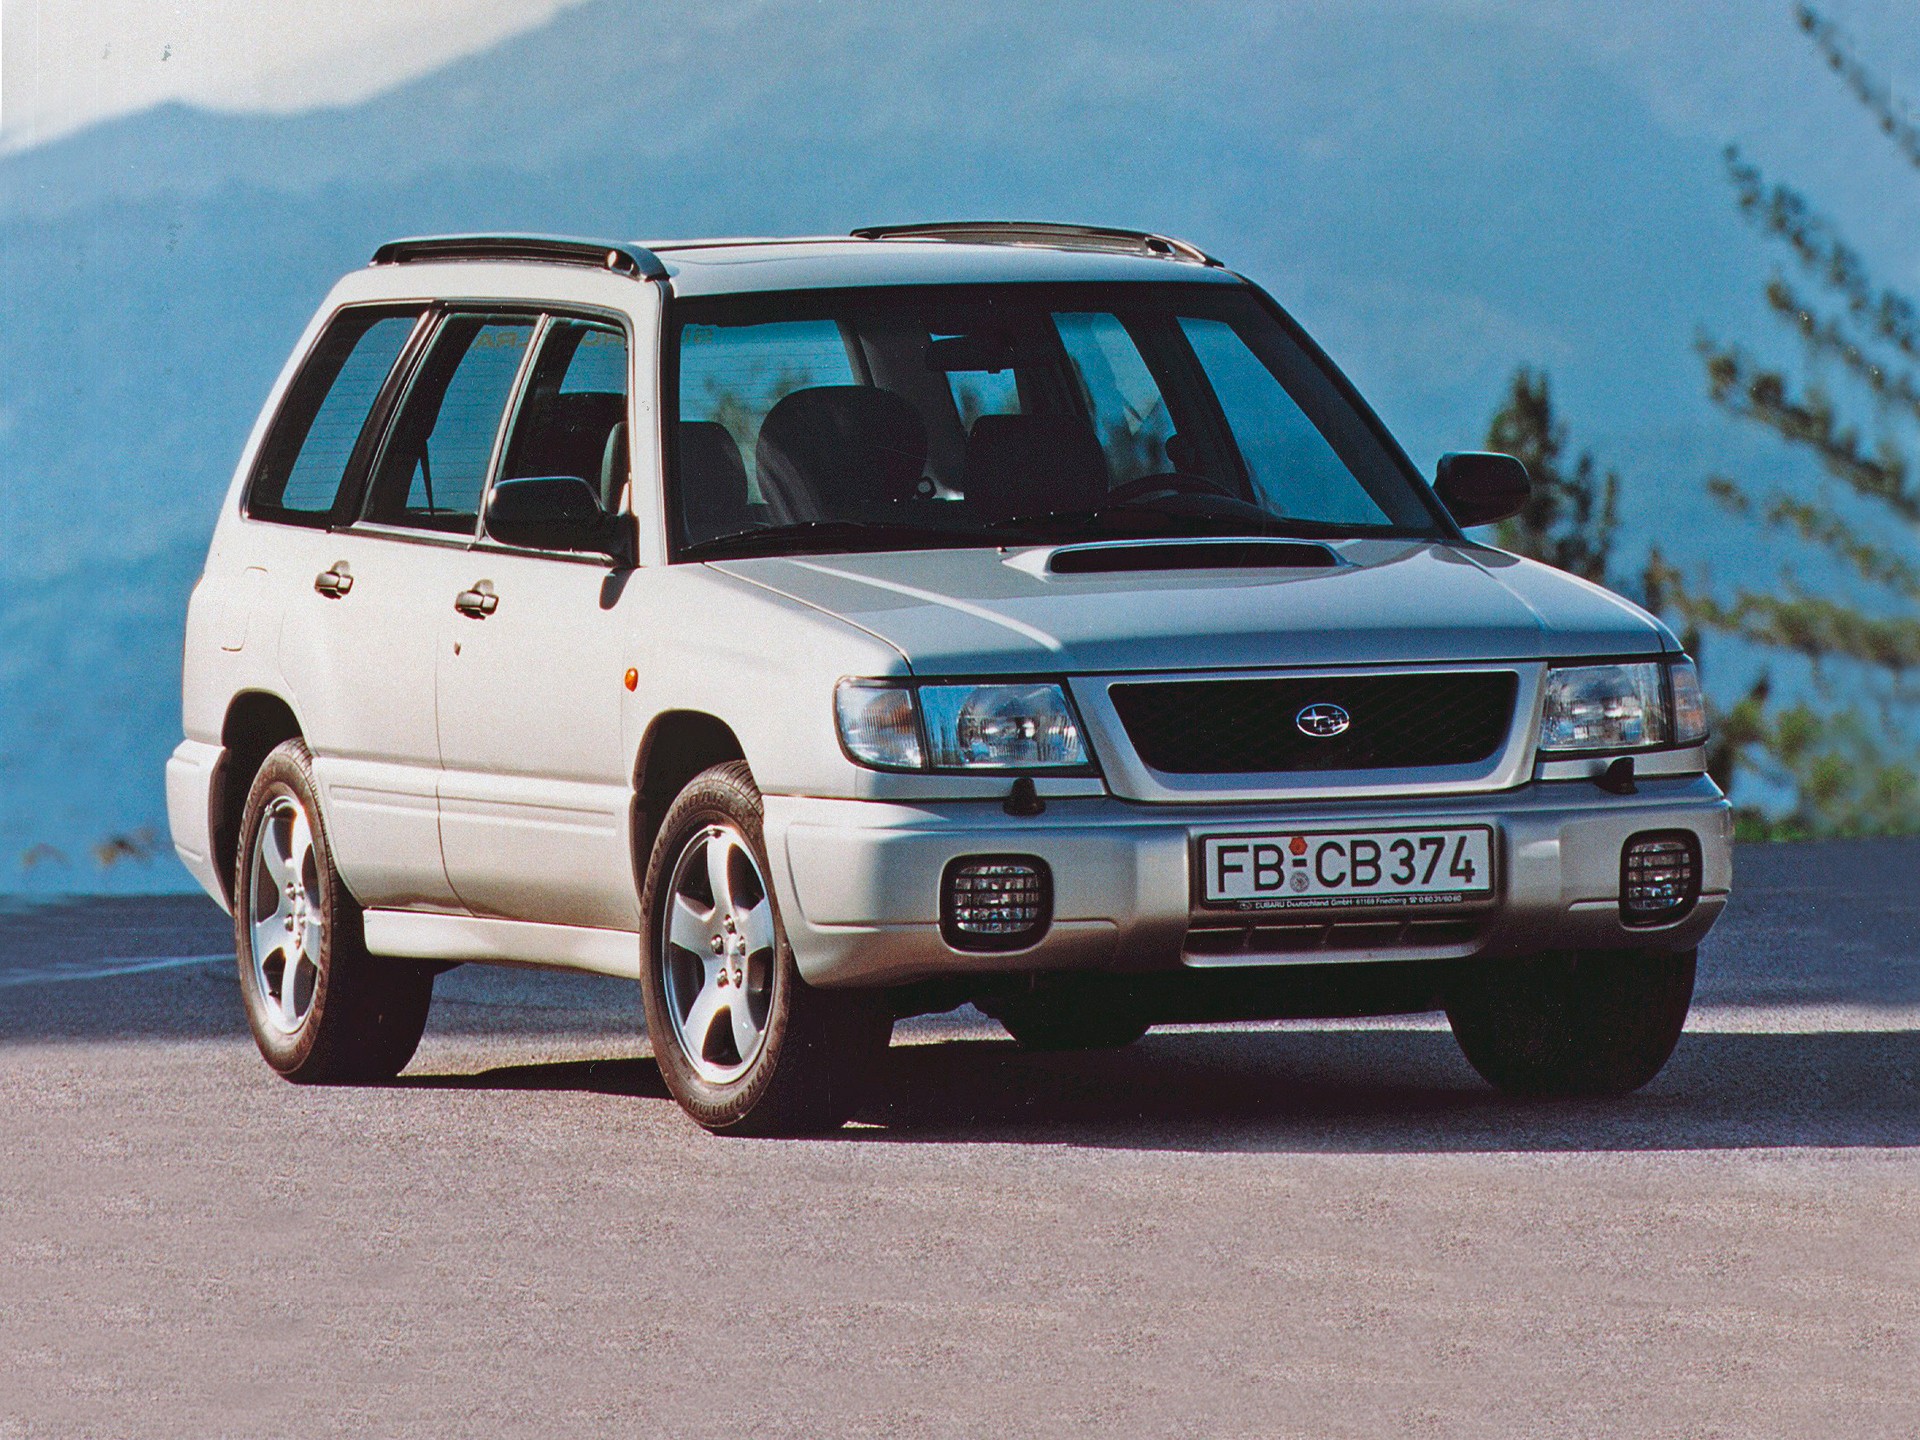 Субару (Subaru) хочет собирать авто в России